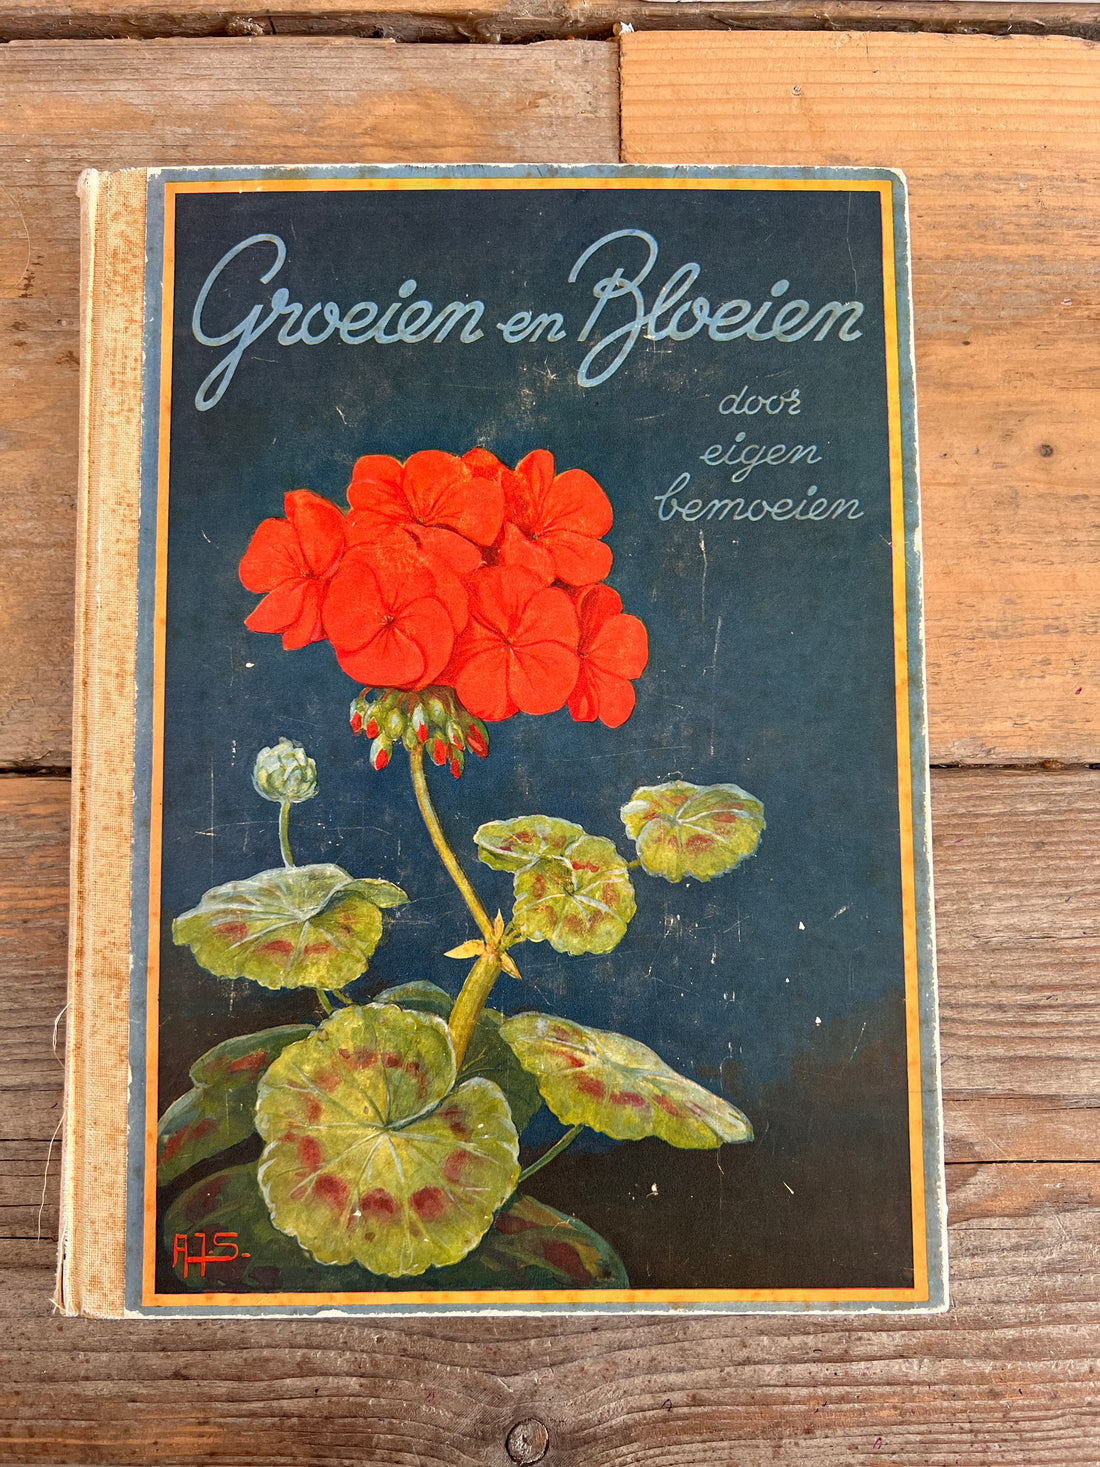 Groeien en bloeien door eigen bemoeien Douwe Egberts 1935